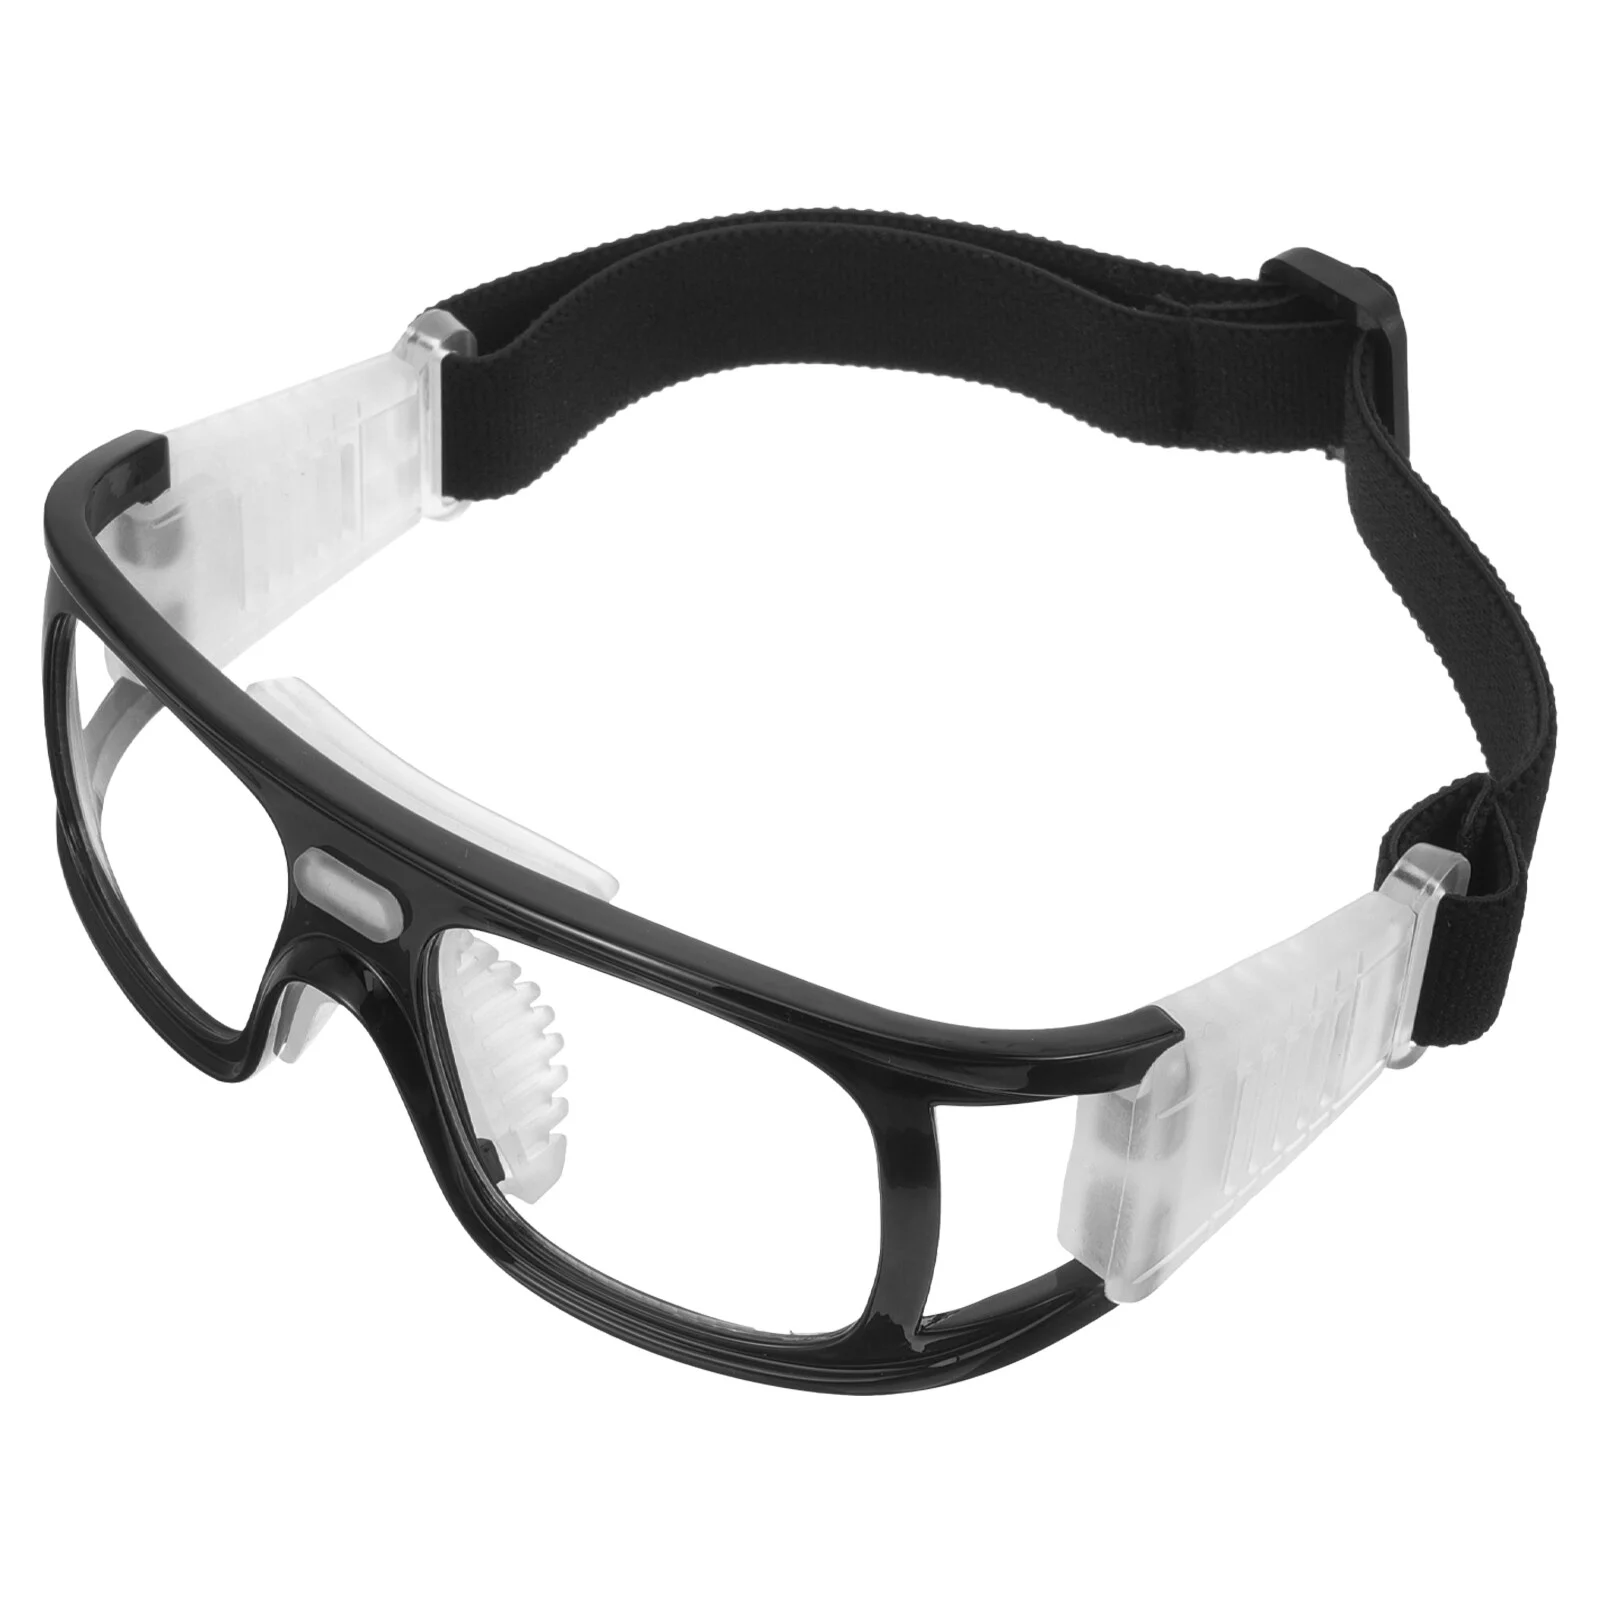 

Спортивные зеркальные Стильные Баскетбольные очки, очки для активного отдыха, практичные безопасные удобные очки